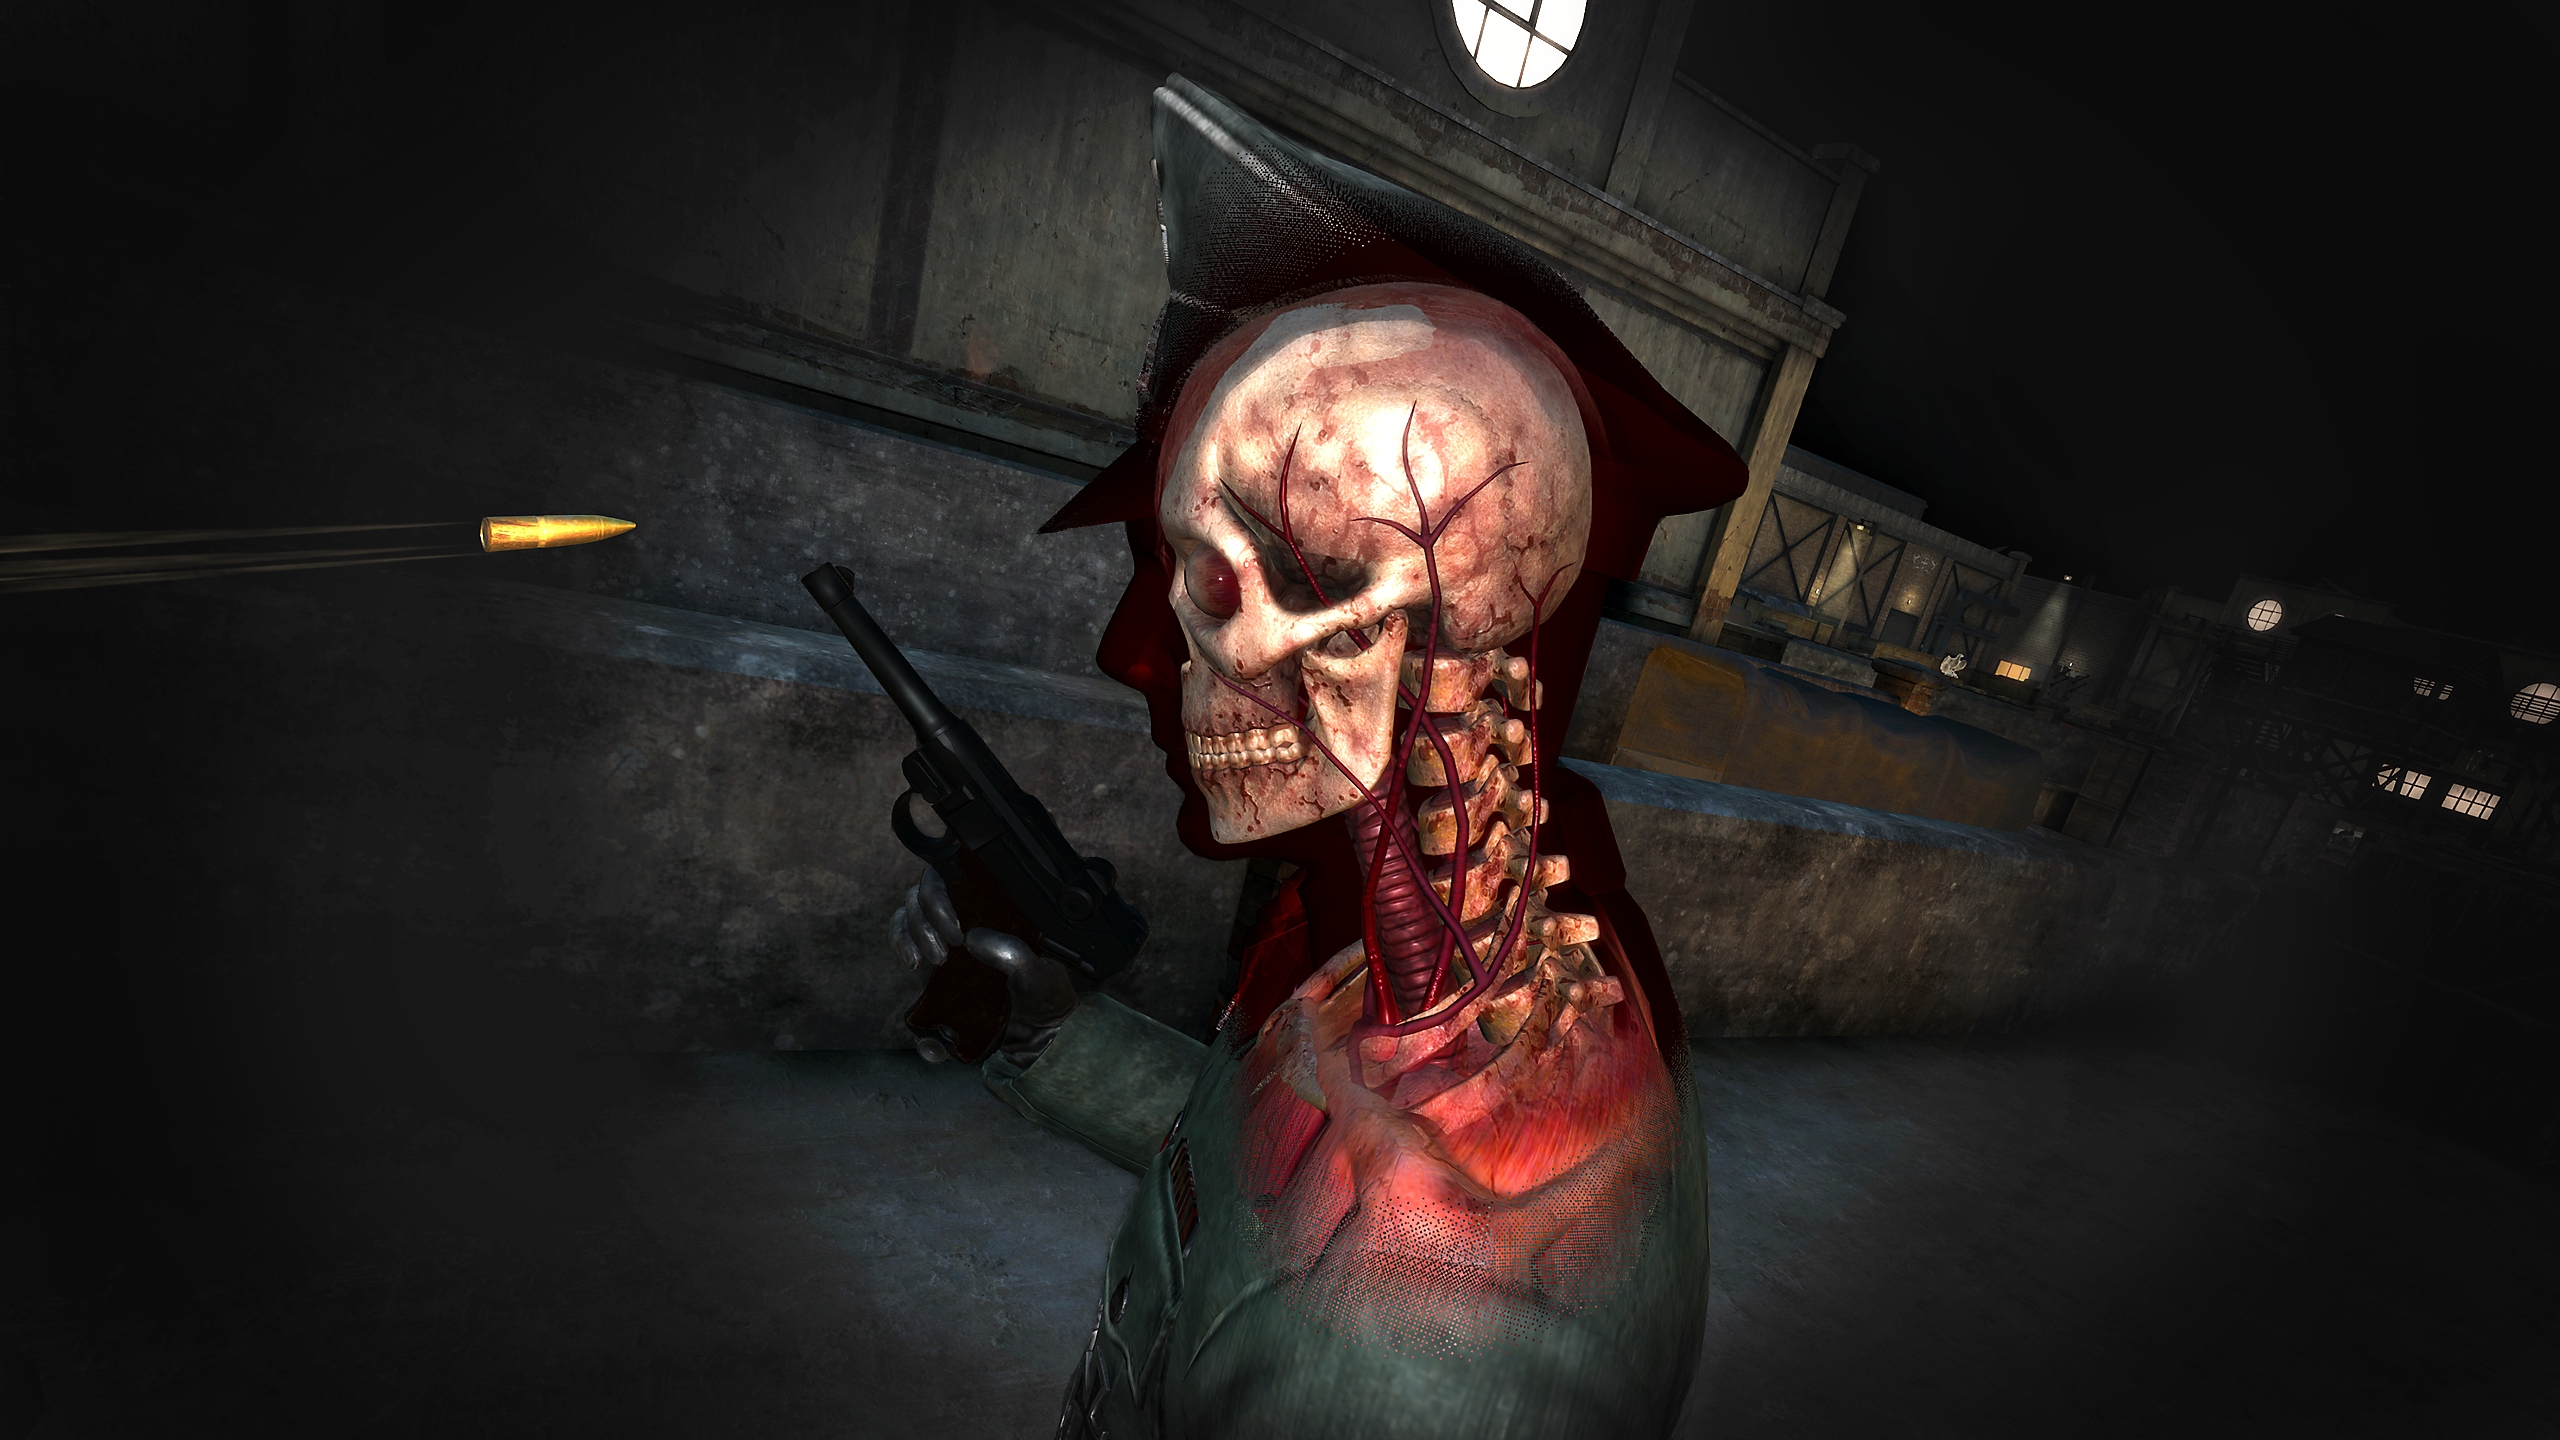 لقطة شاشة لكاميرا من منظور القاتل kill-cam في لعبة Sniper Elite VR